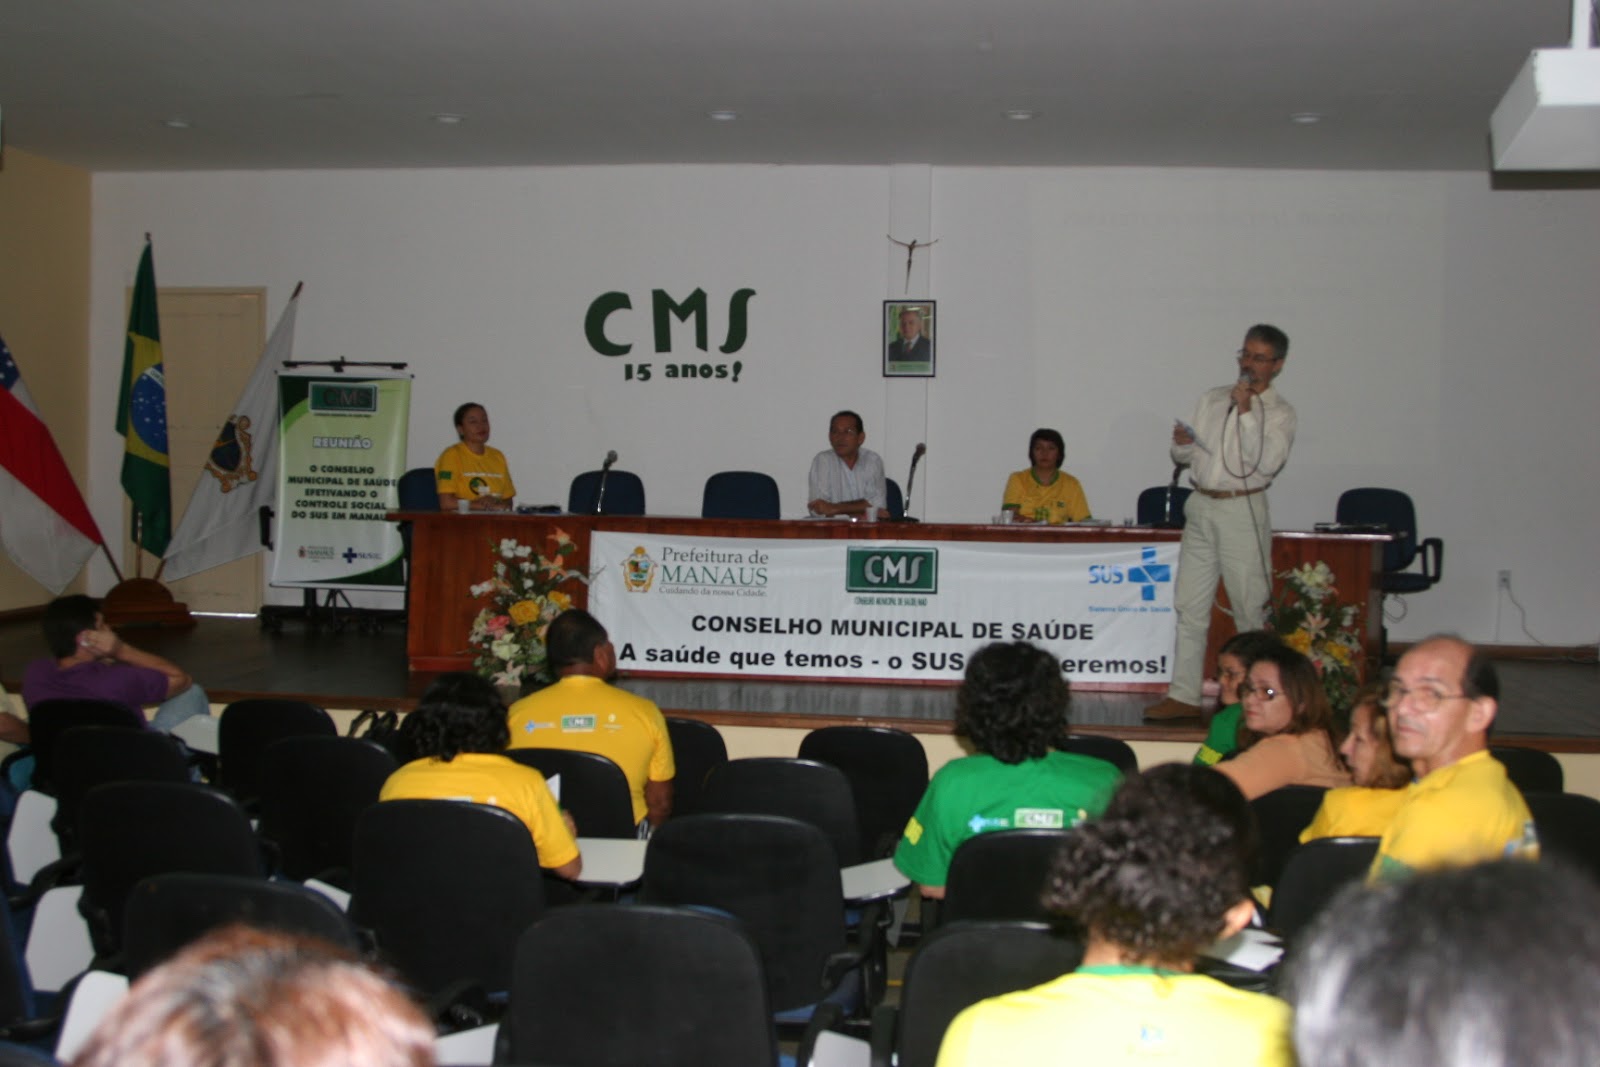 CMS/Manaus inicia inscrições para processo eleitoral complementar de CLSs